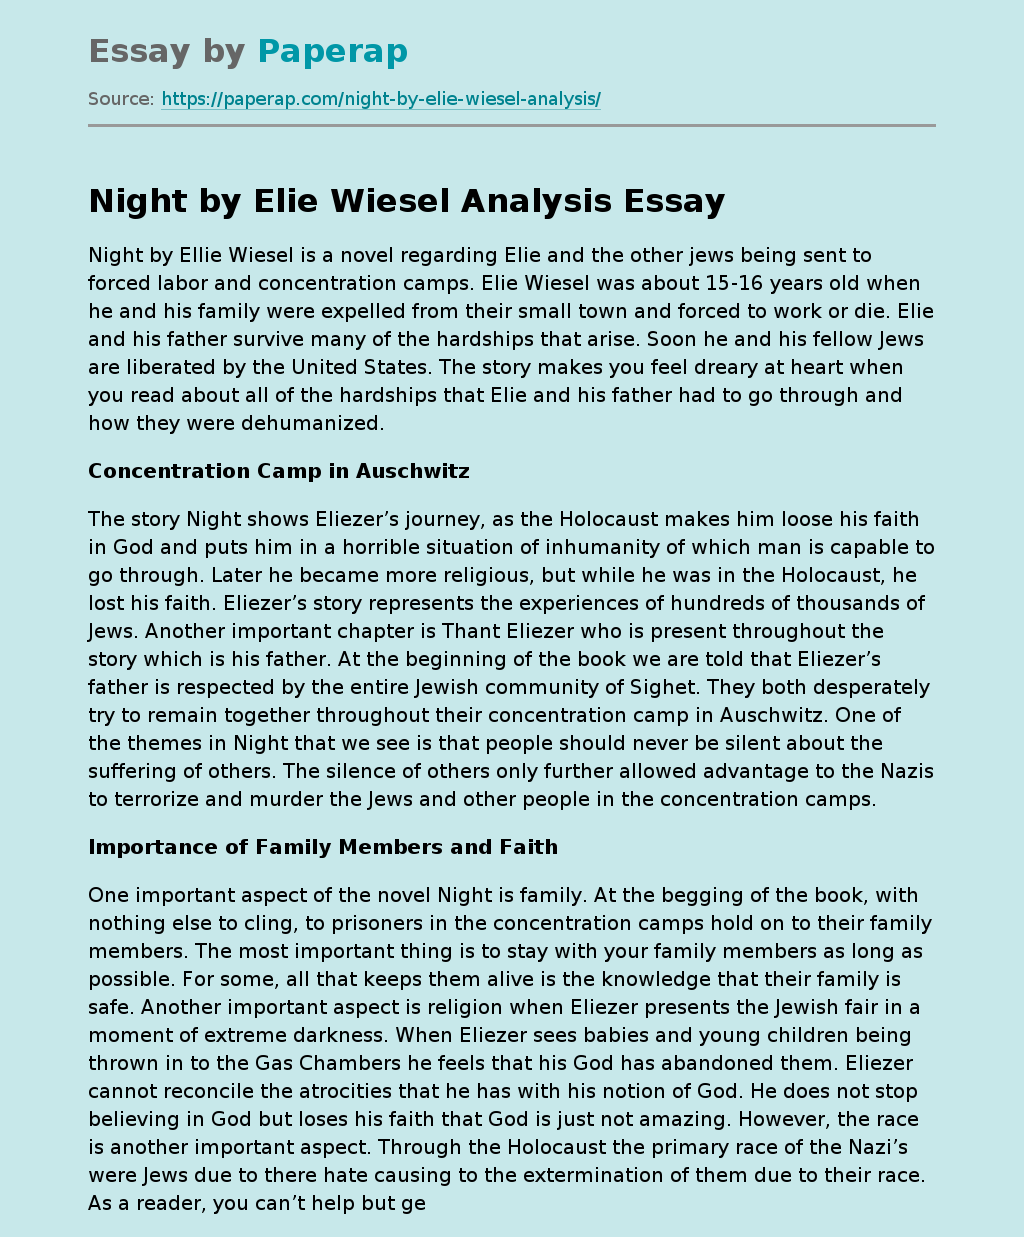 Night by Elie Wiesel Analysis